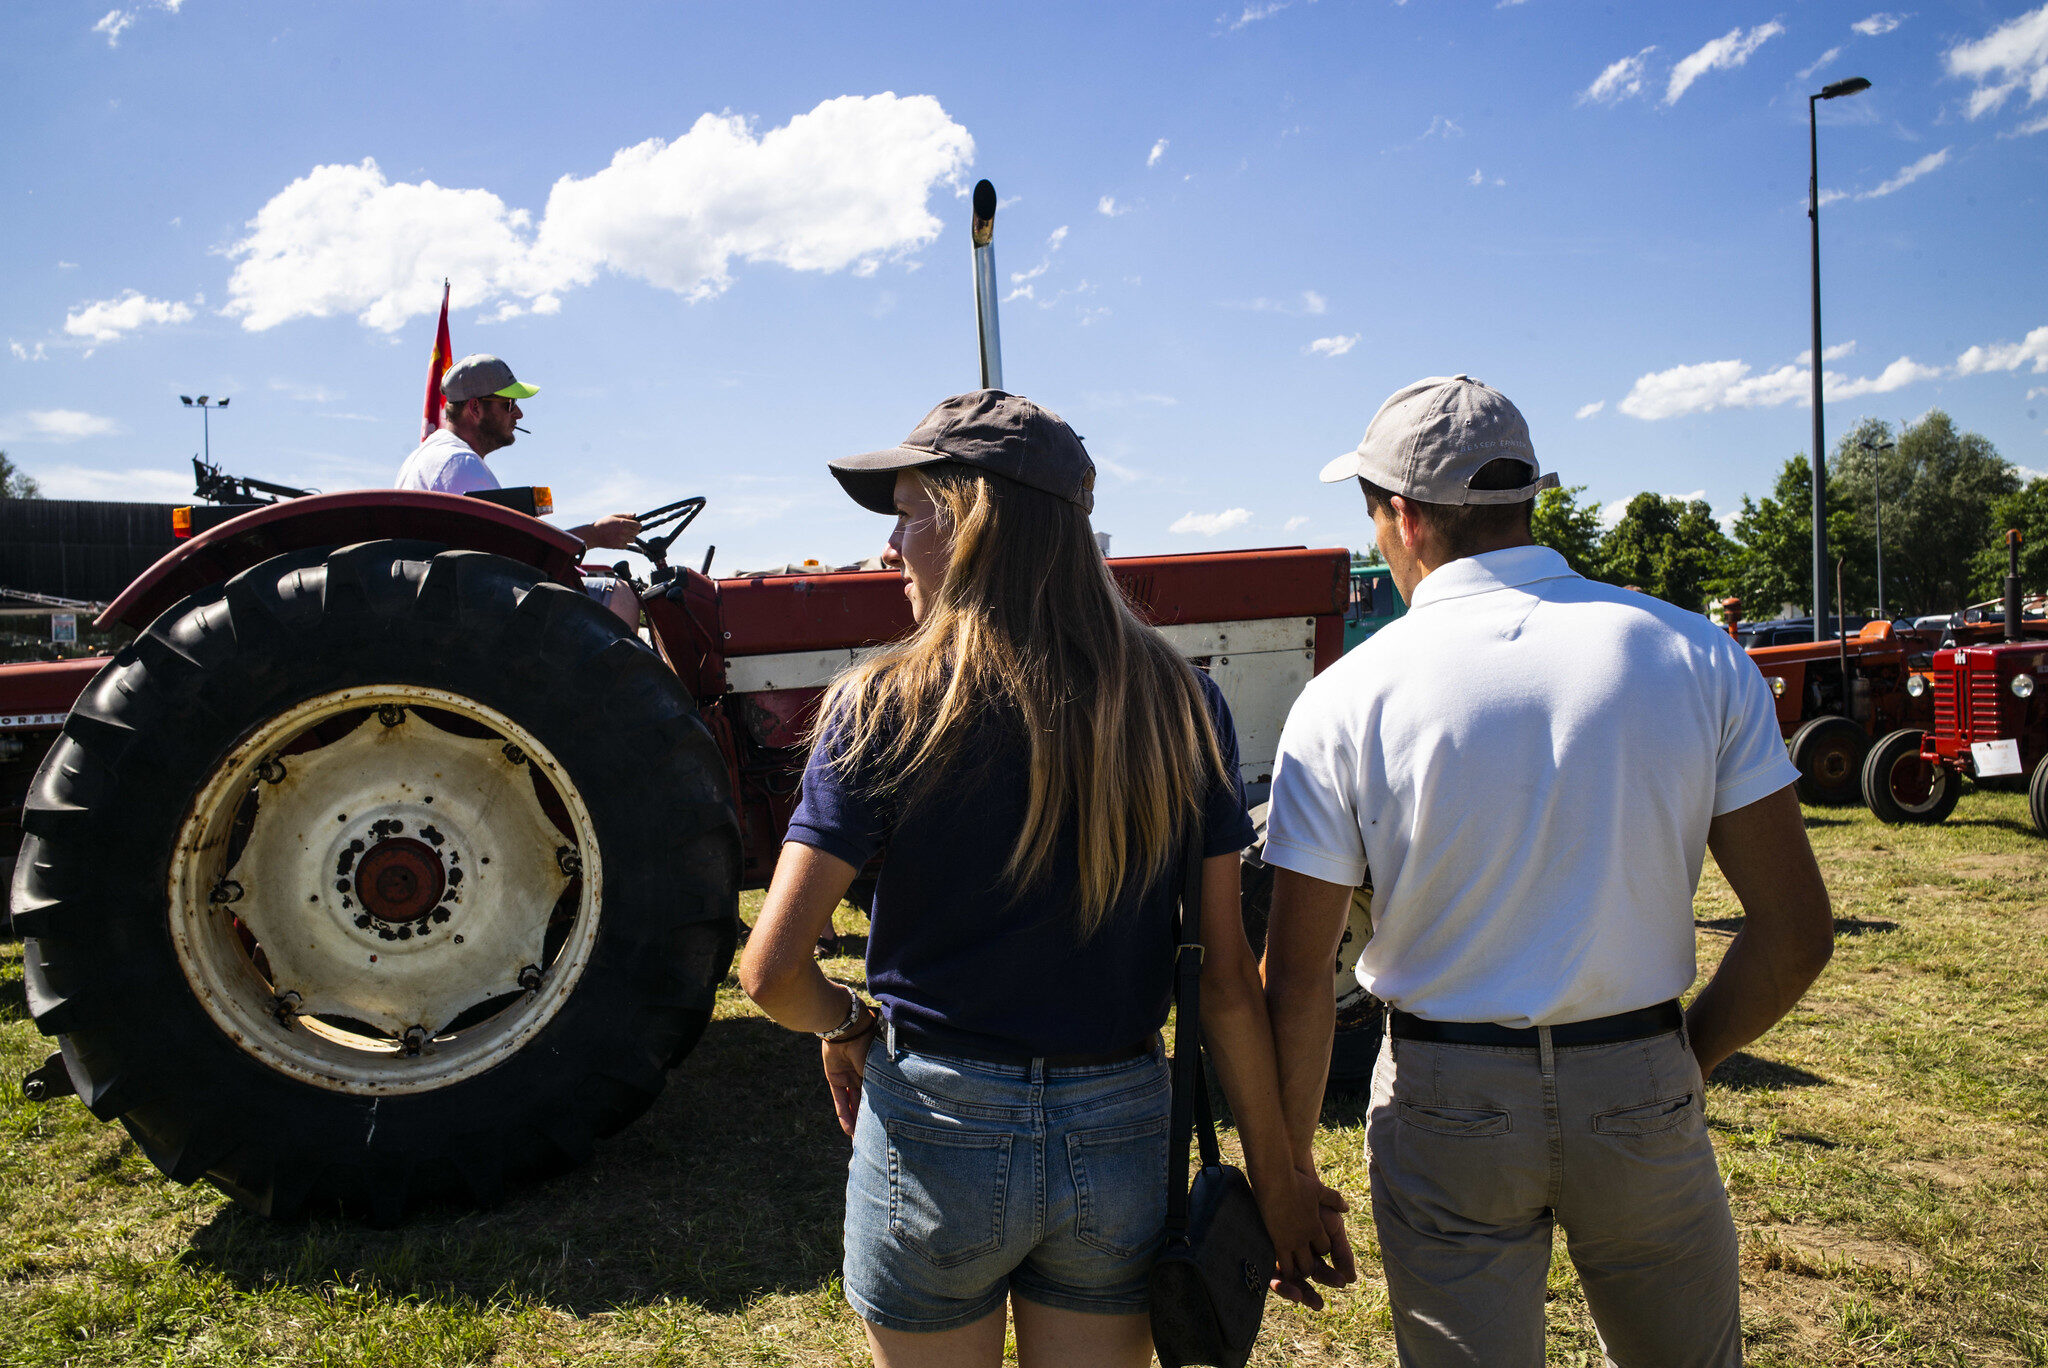 À Sélestat, les vieux tracteurs transmettent le souvenir de l’Alsace campagnarde